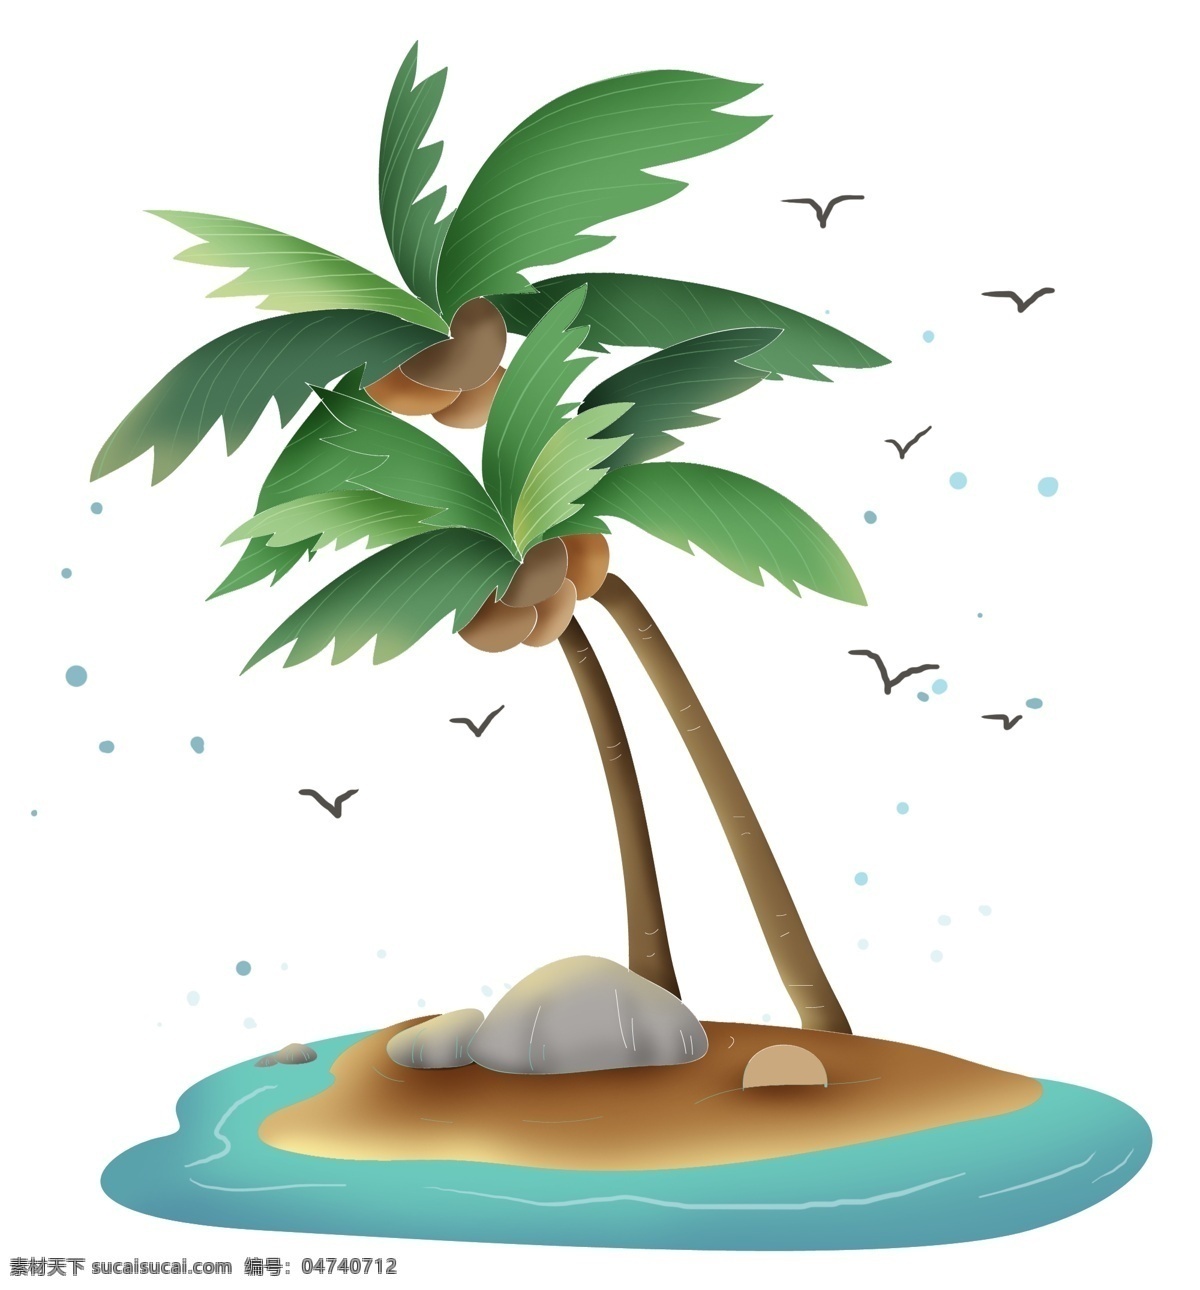 夏日 海岛 度假 海边 椰子树 夏日海岛度假 暑期旅游 避暑海边度假 游泳 椰树 叶子 沙滩 云朵 海鸥 大海 海岛旅游